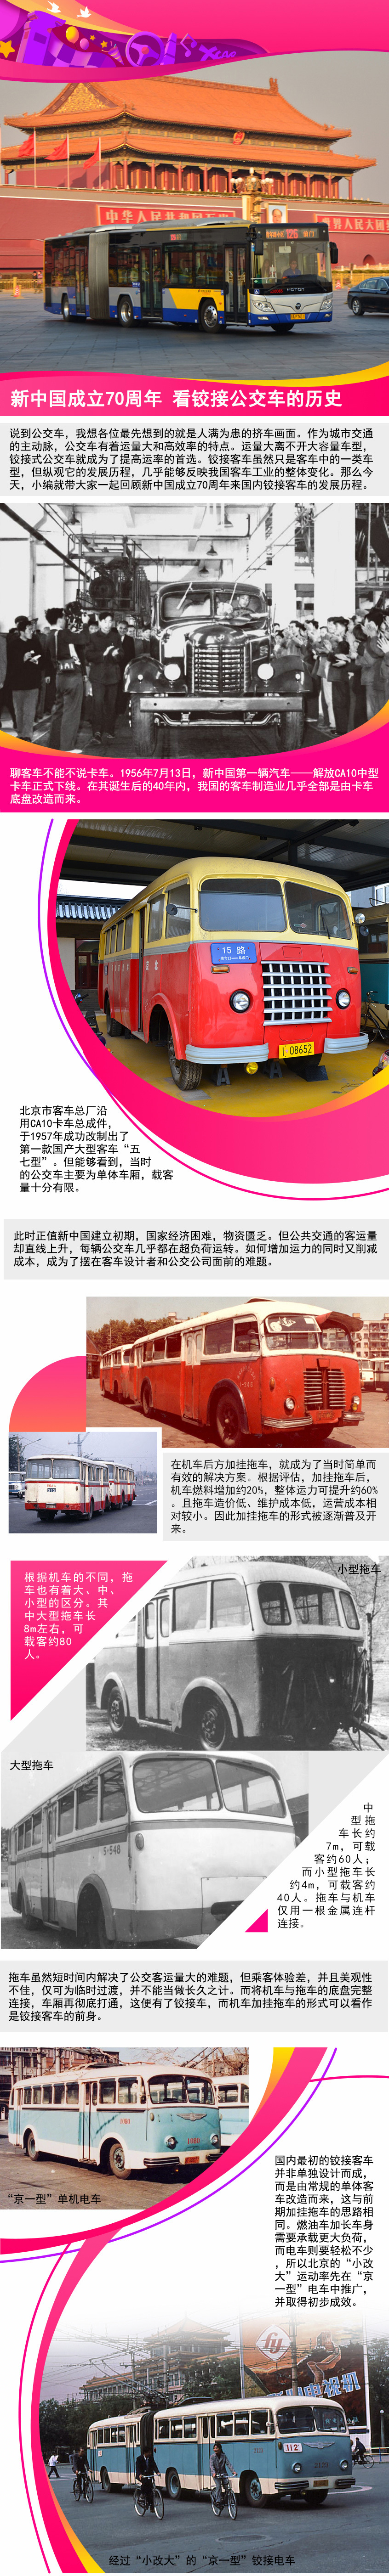 新中国成立70周年 看铰接公交车的历史